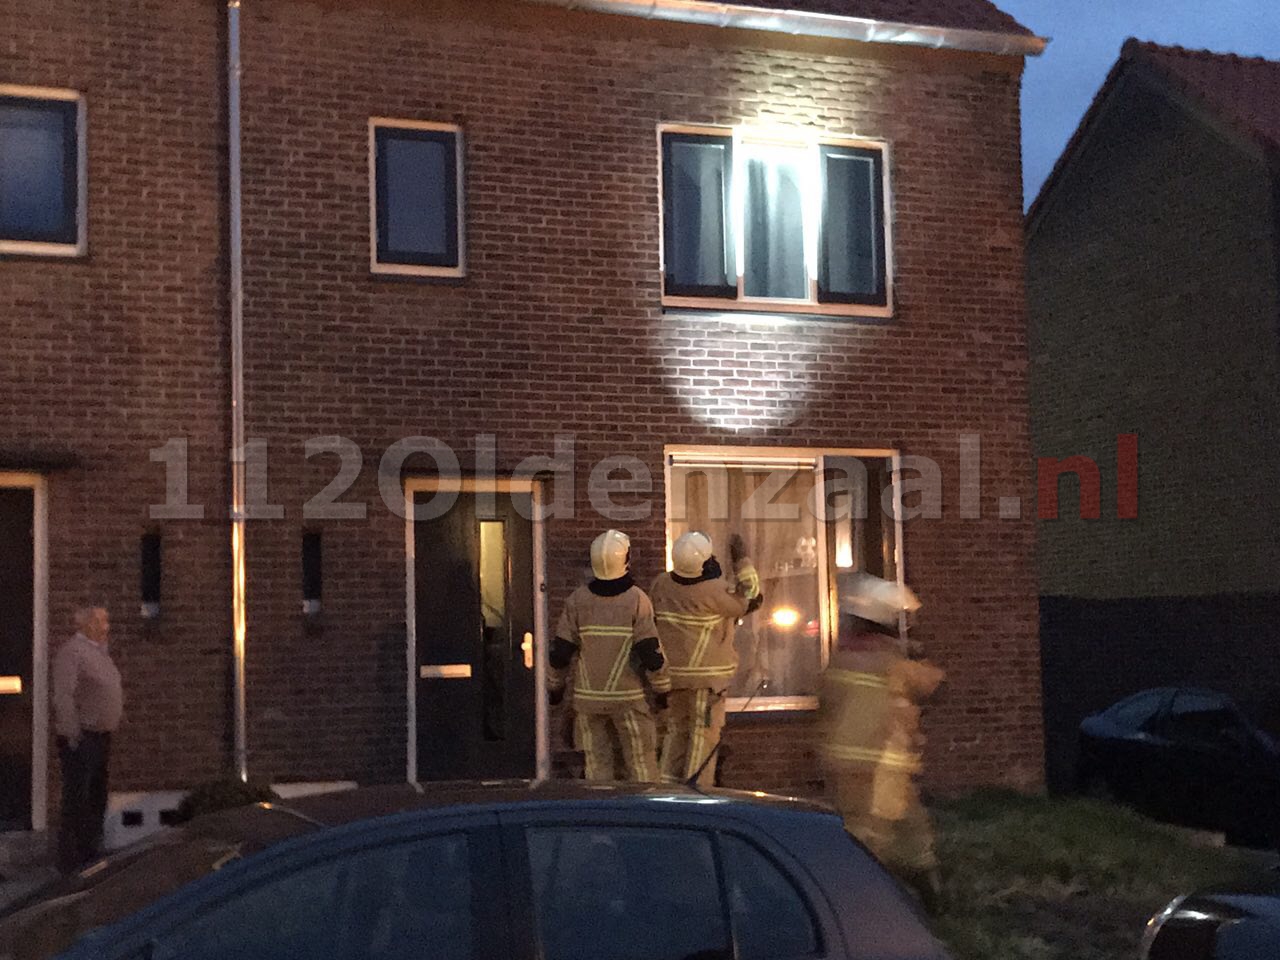 UPDATE: Politie en brandweer rukken uit voor rookmelder Dr. Poelsstraat Oldenzaal